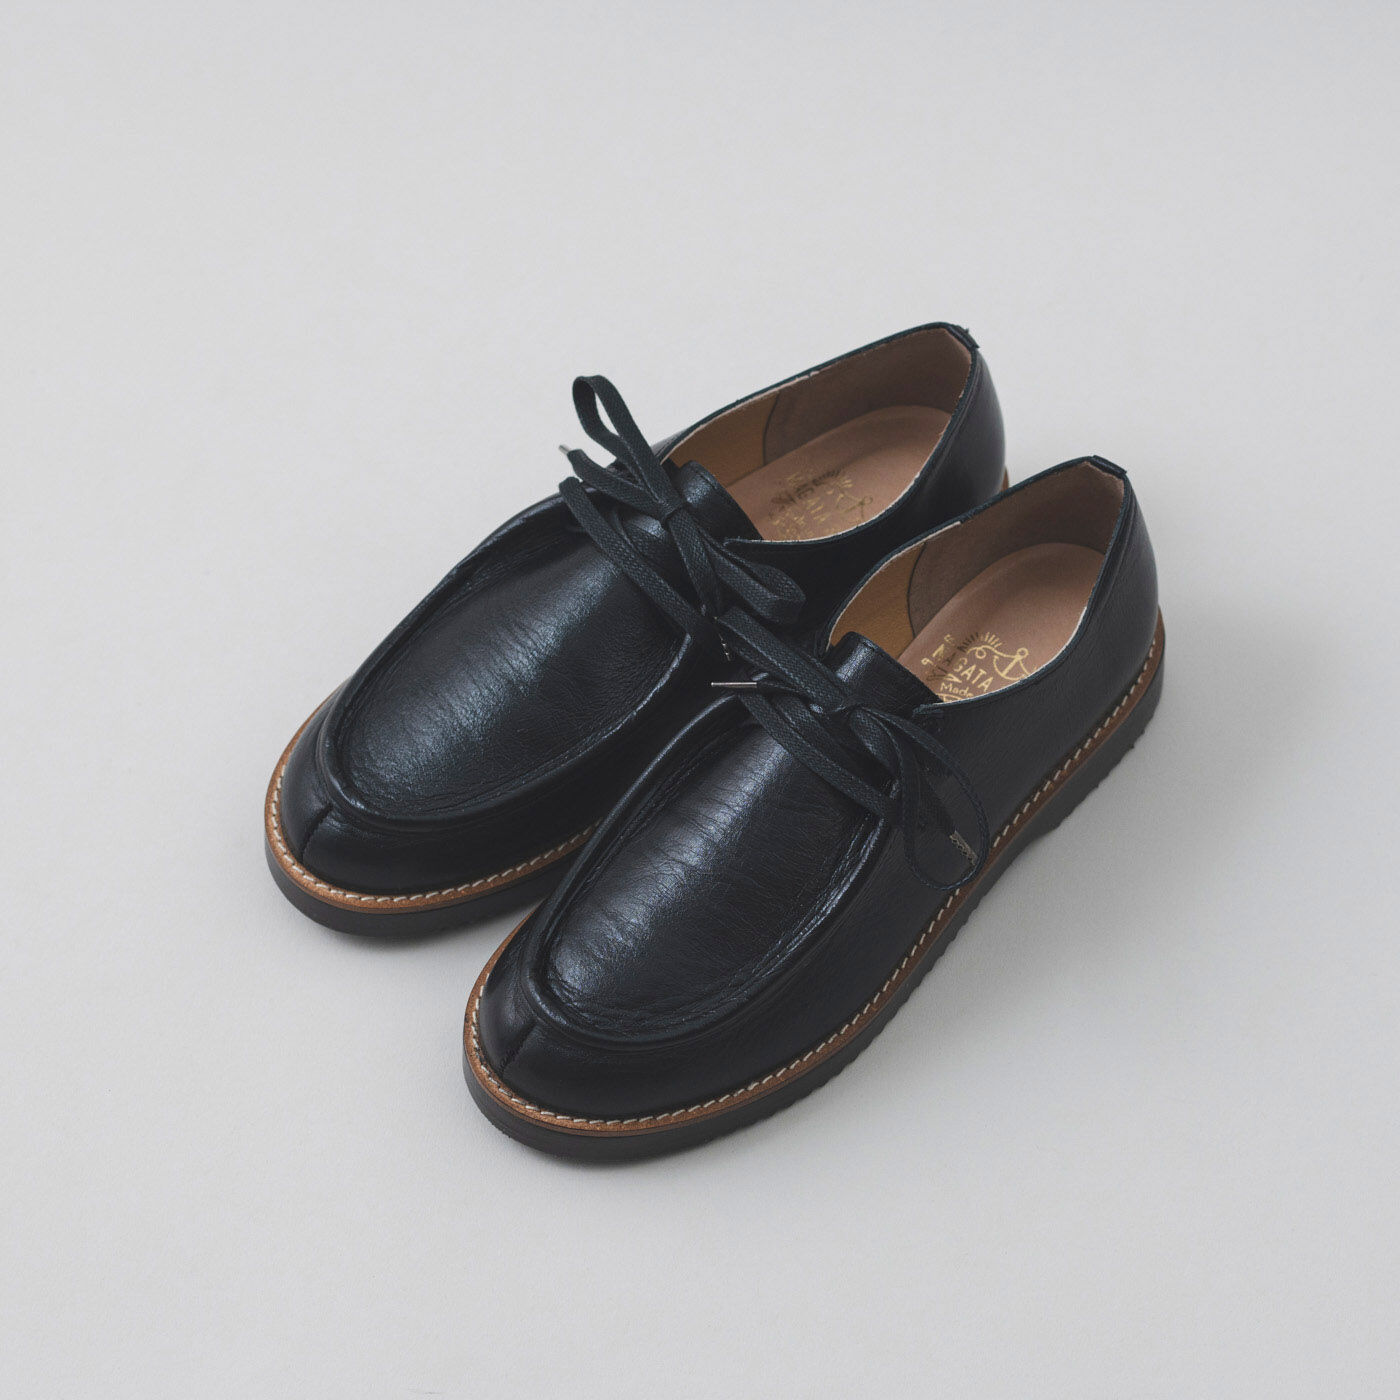 ＆Stories|長田の靴職人が作った 職人本革のモカシンシューズ〈ブラックスピネル〉|幅広・甲高の足もすっぽり包み、フィットします。